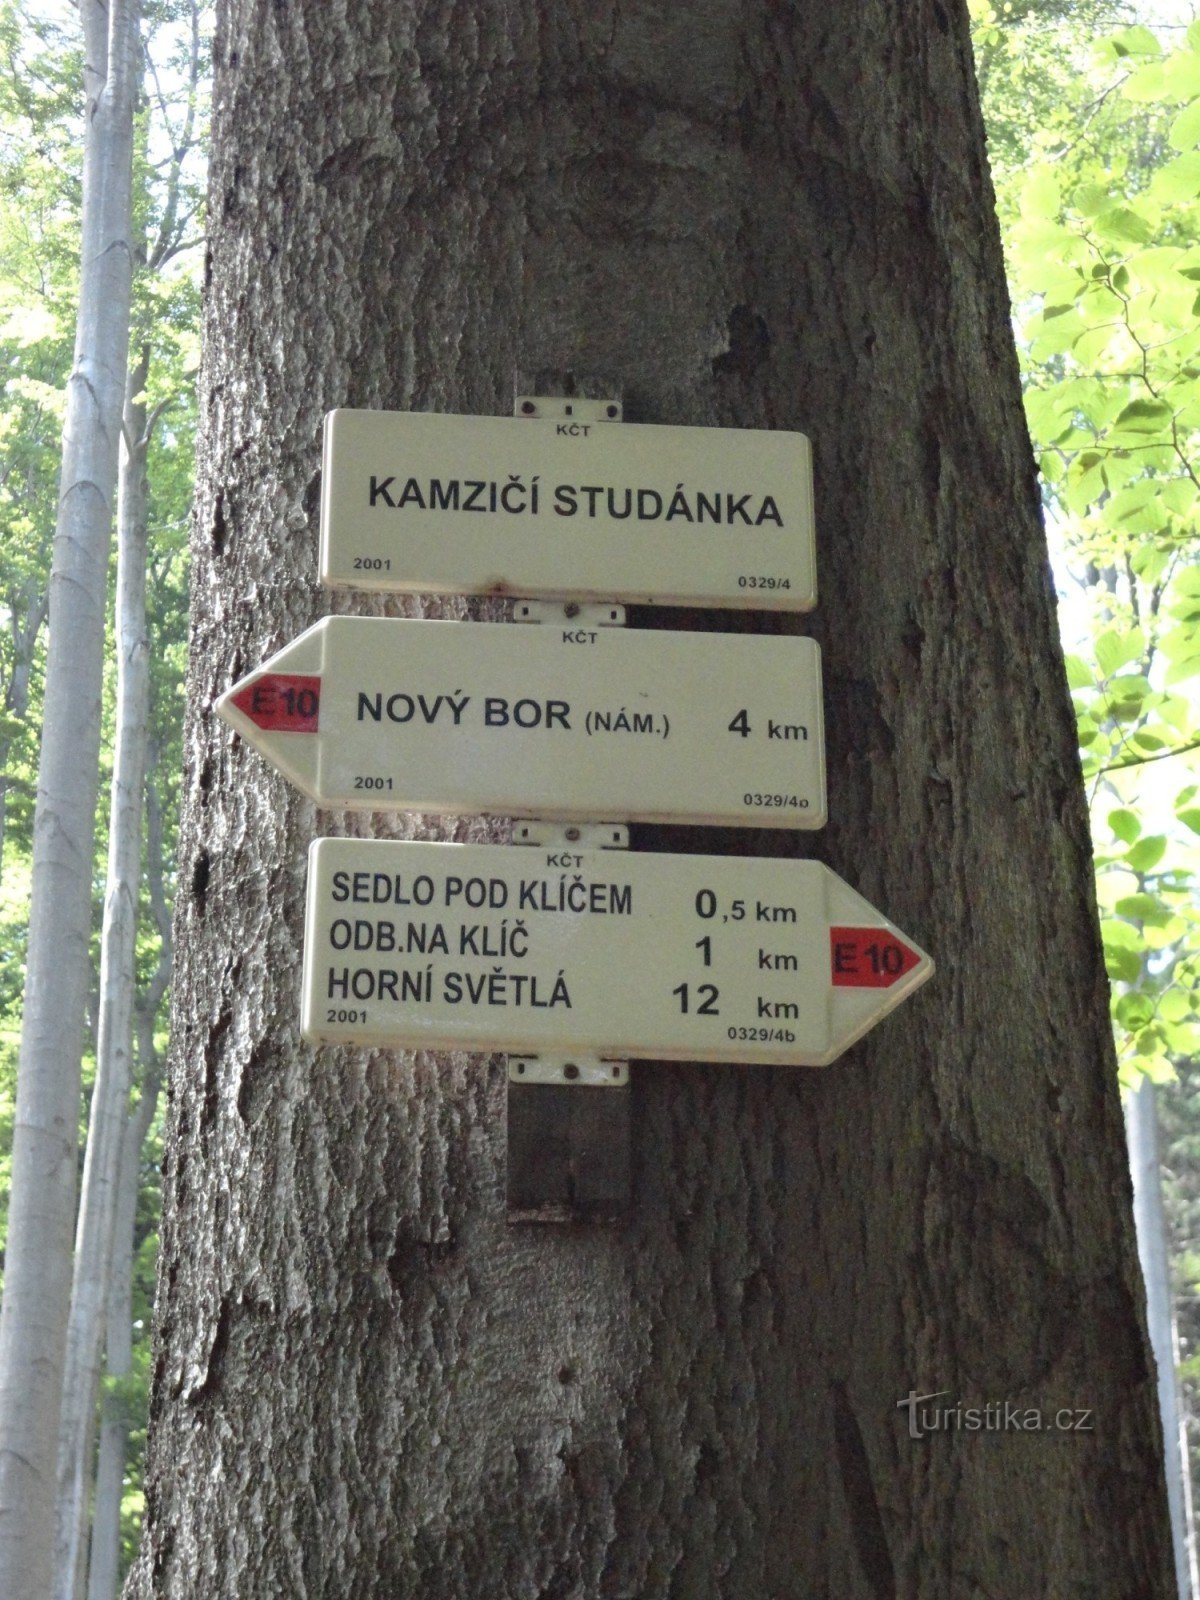 encruzilhada turística no poço Kamzičí